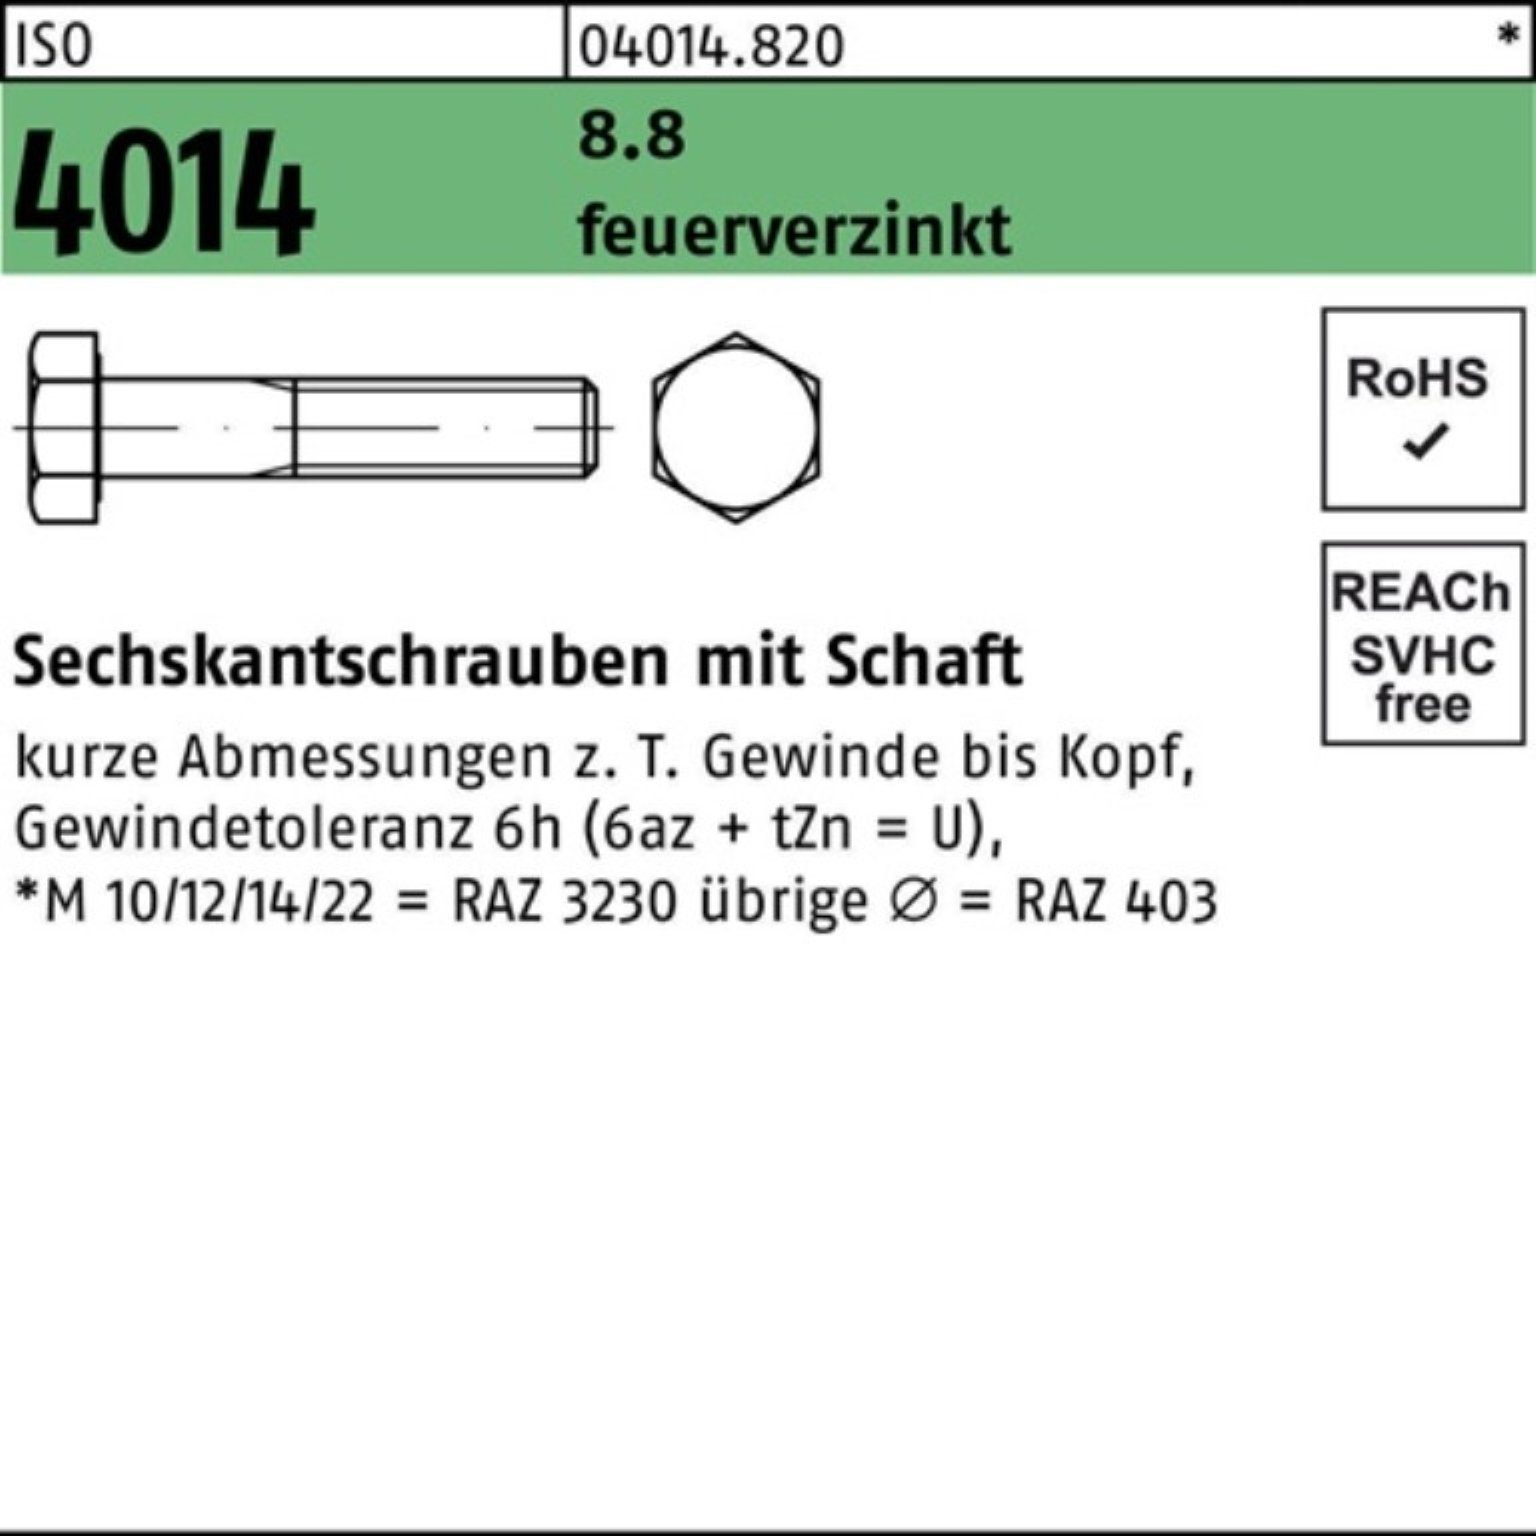 Bufab Sechskantschraube 100er Pack Sechskantschraube ISO 160 M20x 8.8 feuerverz. 1 Schaft 4014